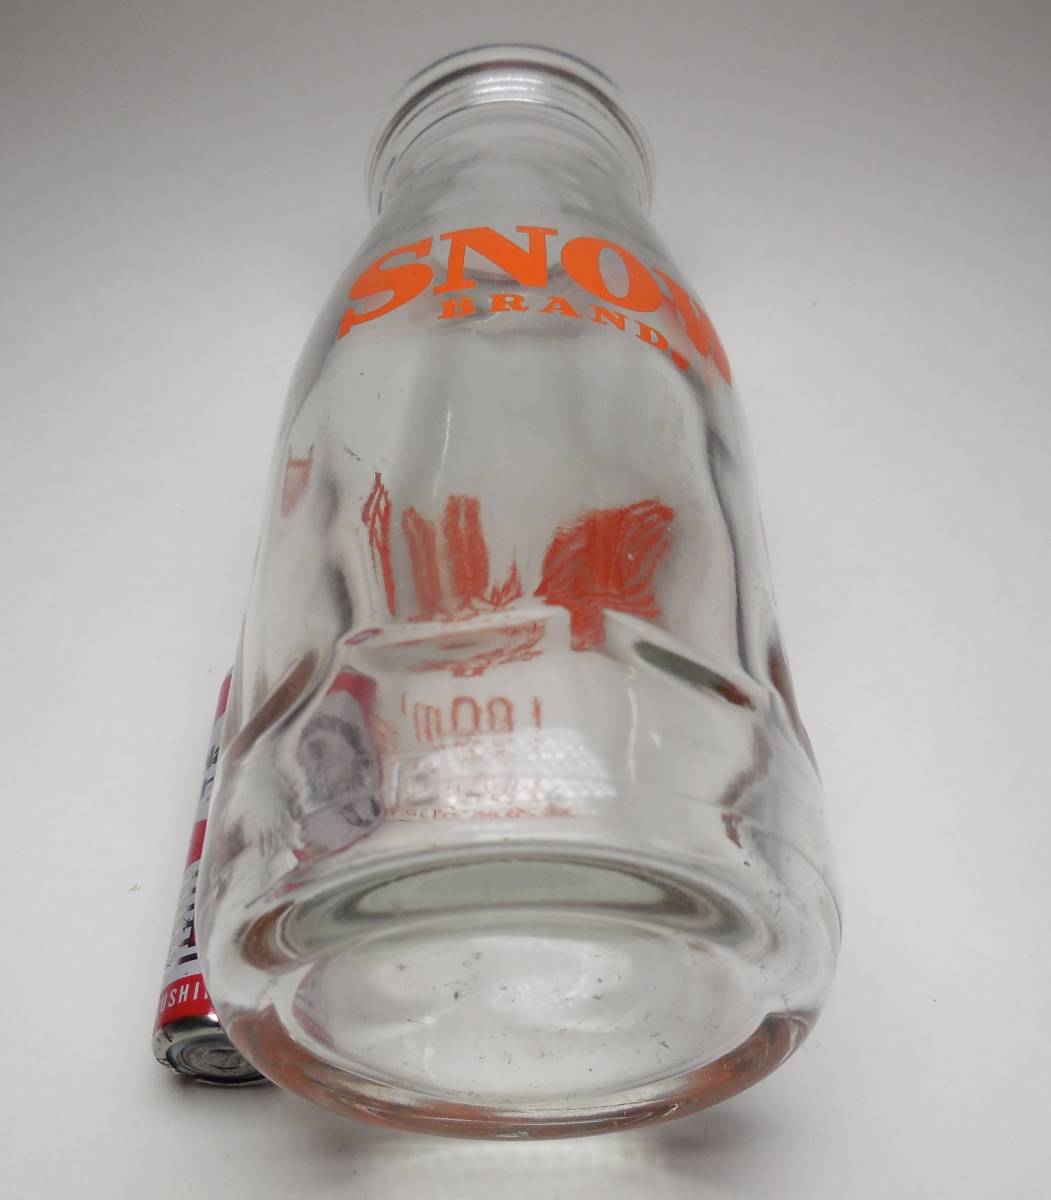 雪印 ＳＮＯＷ 牛乳瓶 180ml 空ビン ガラス瓶の画像7